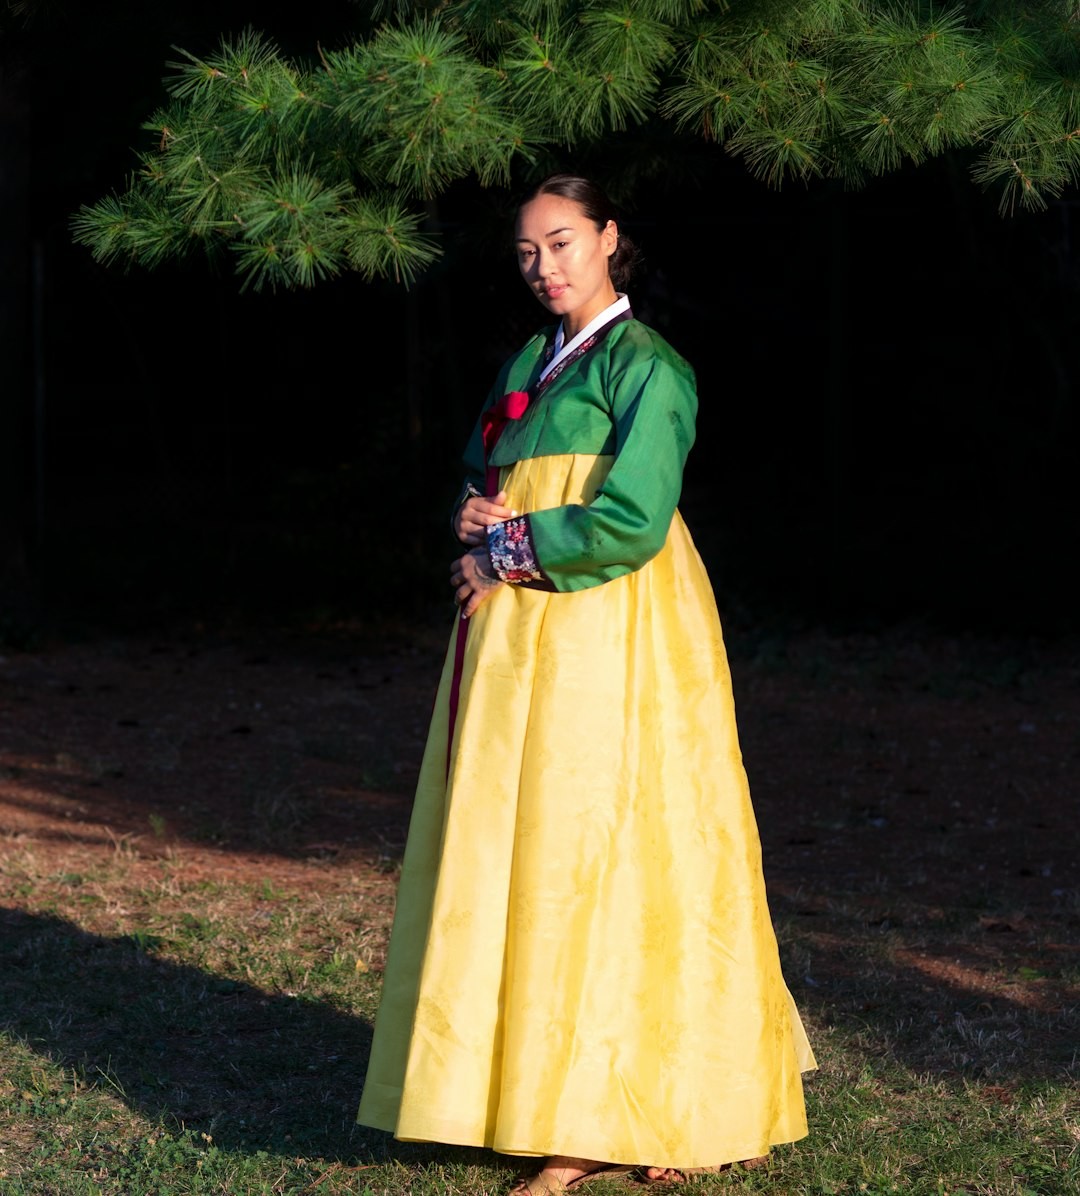 The korean national dress called a Hanbok